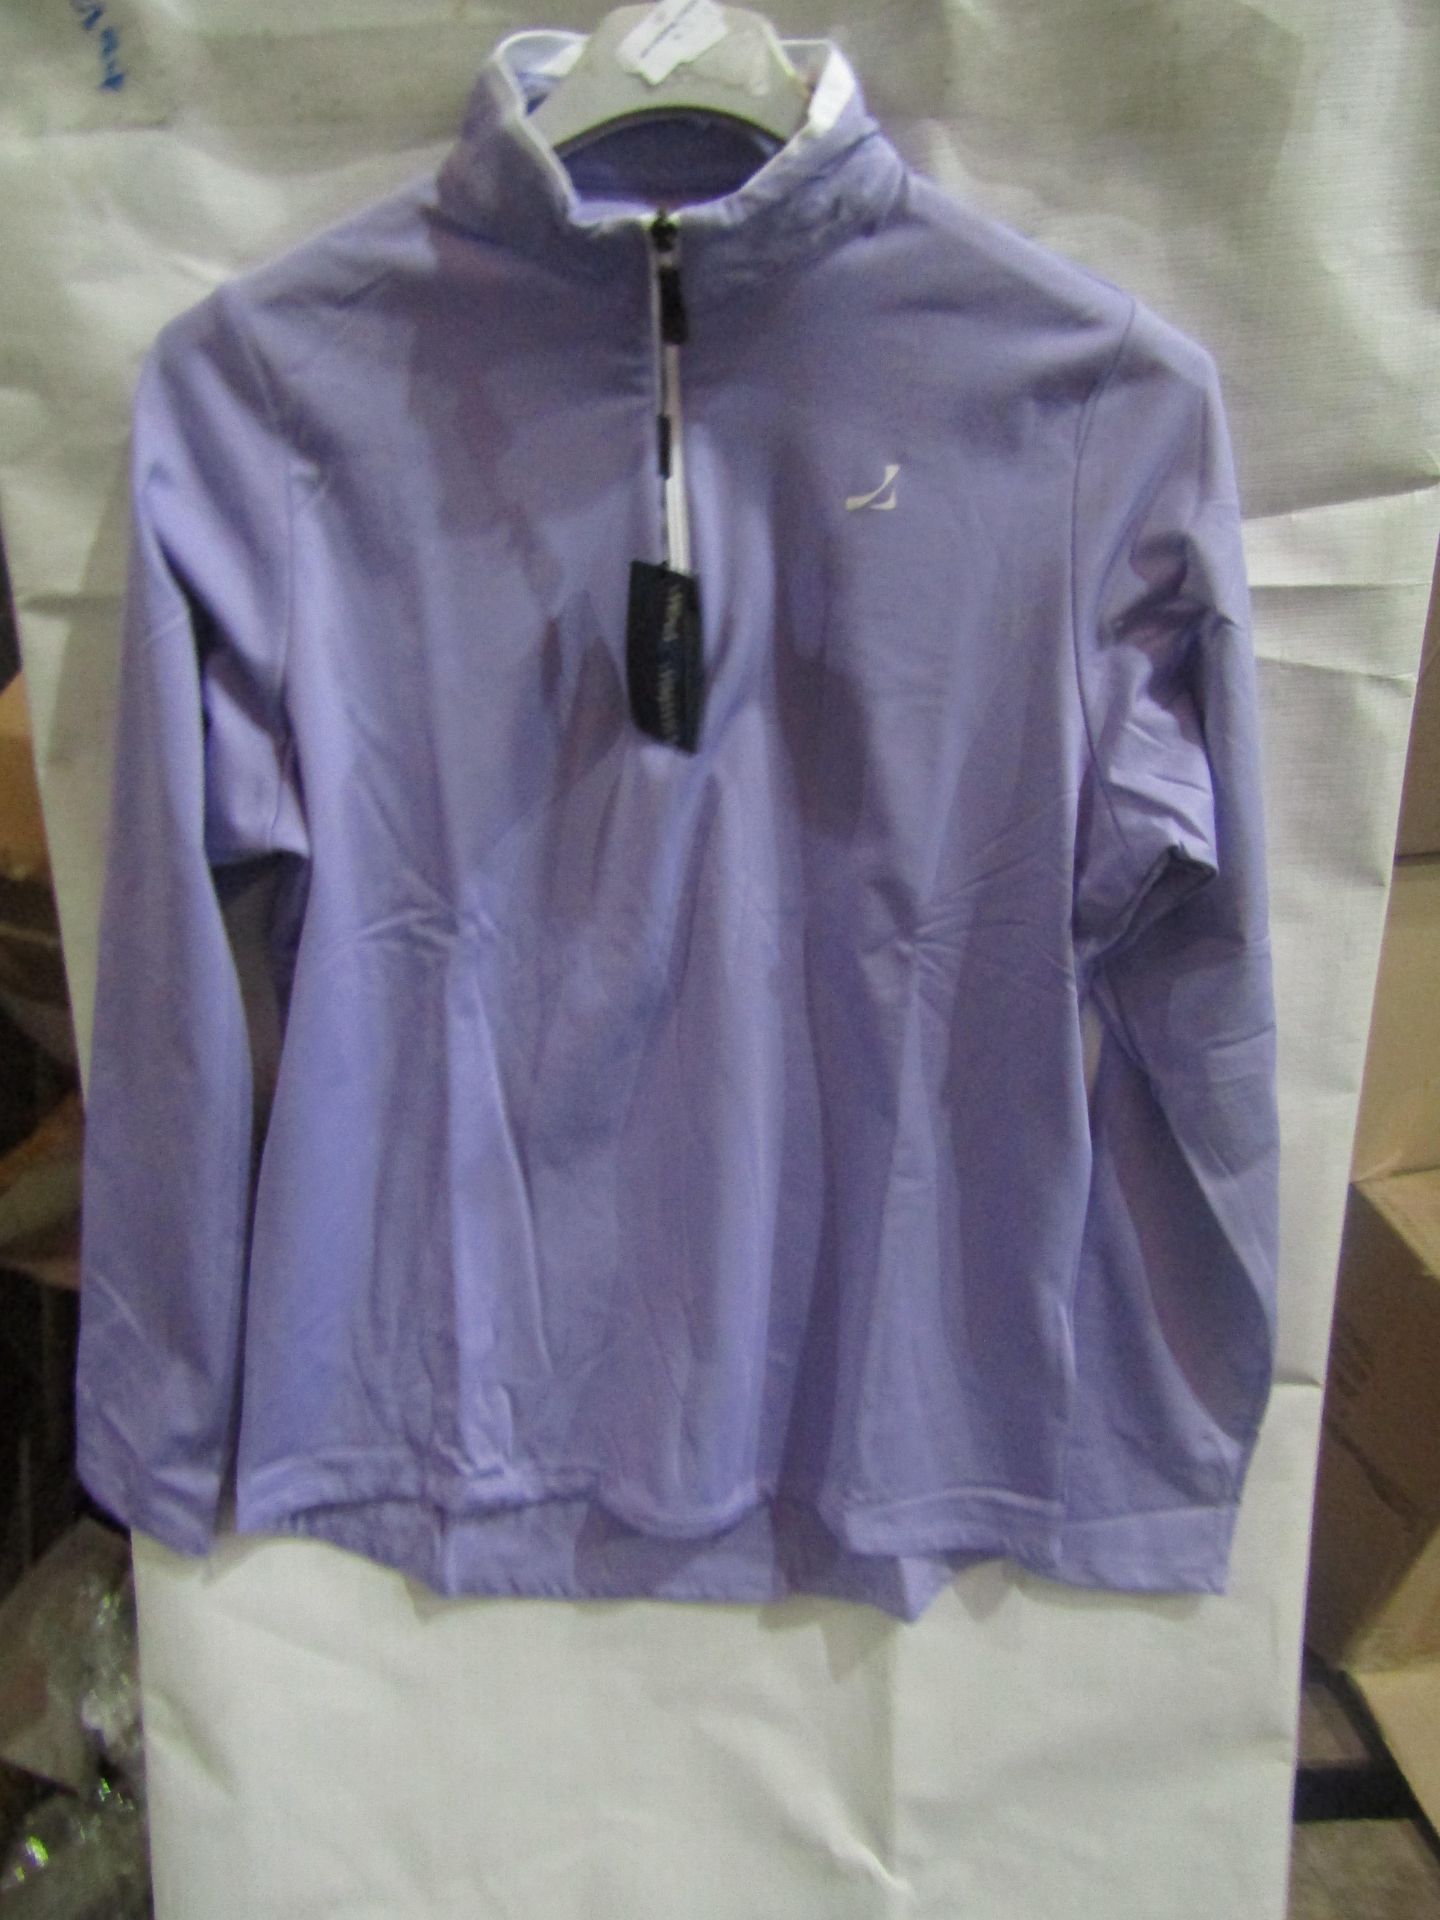 Under Par Ladies Long Sleeve Zip Neck Top Lavender/White, Size: 14 - Good Condition.